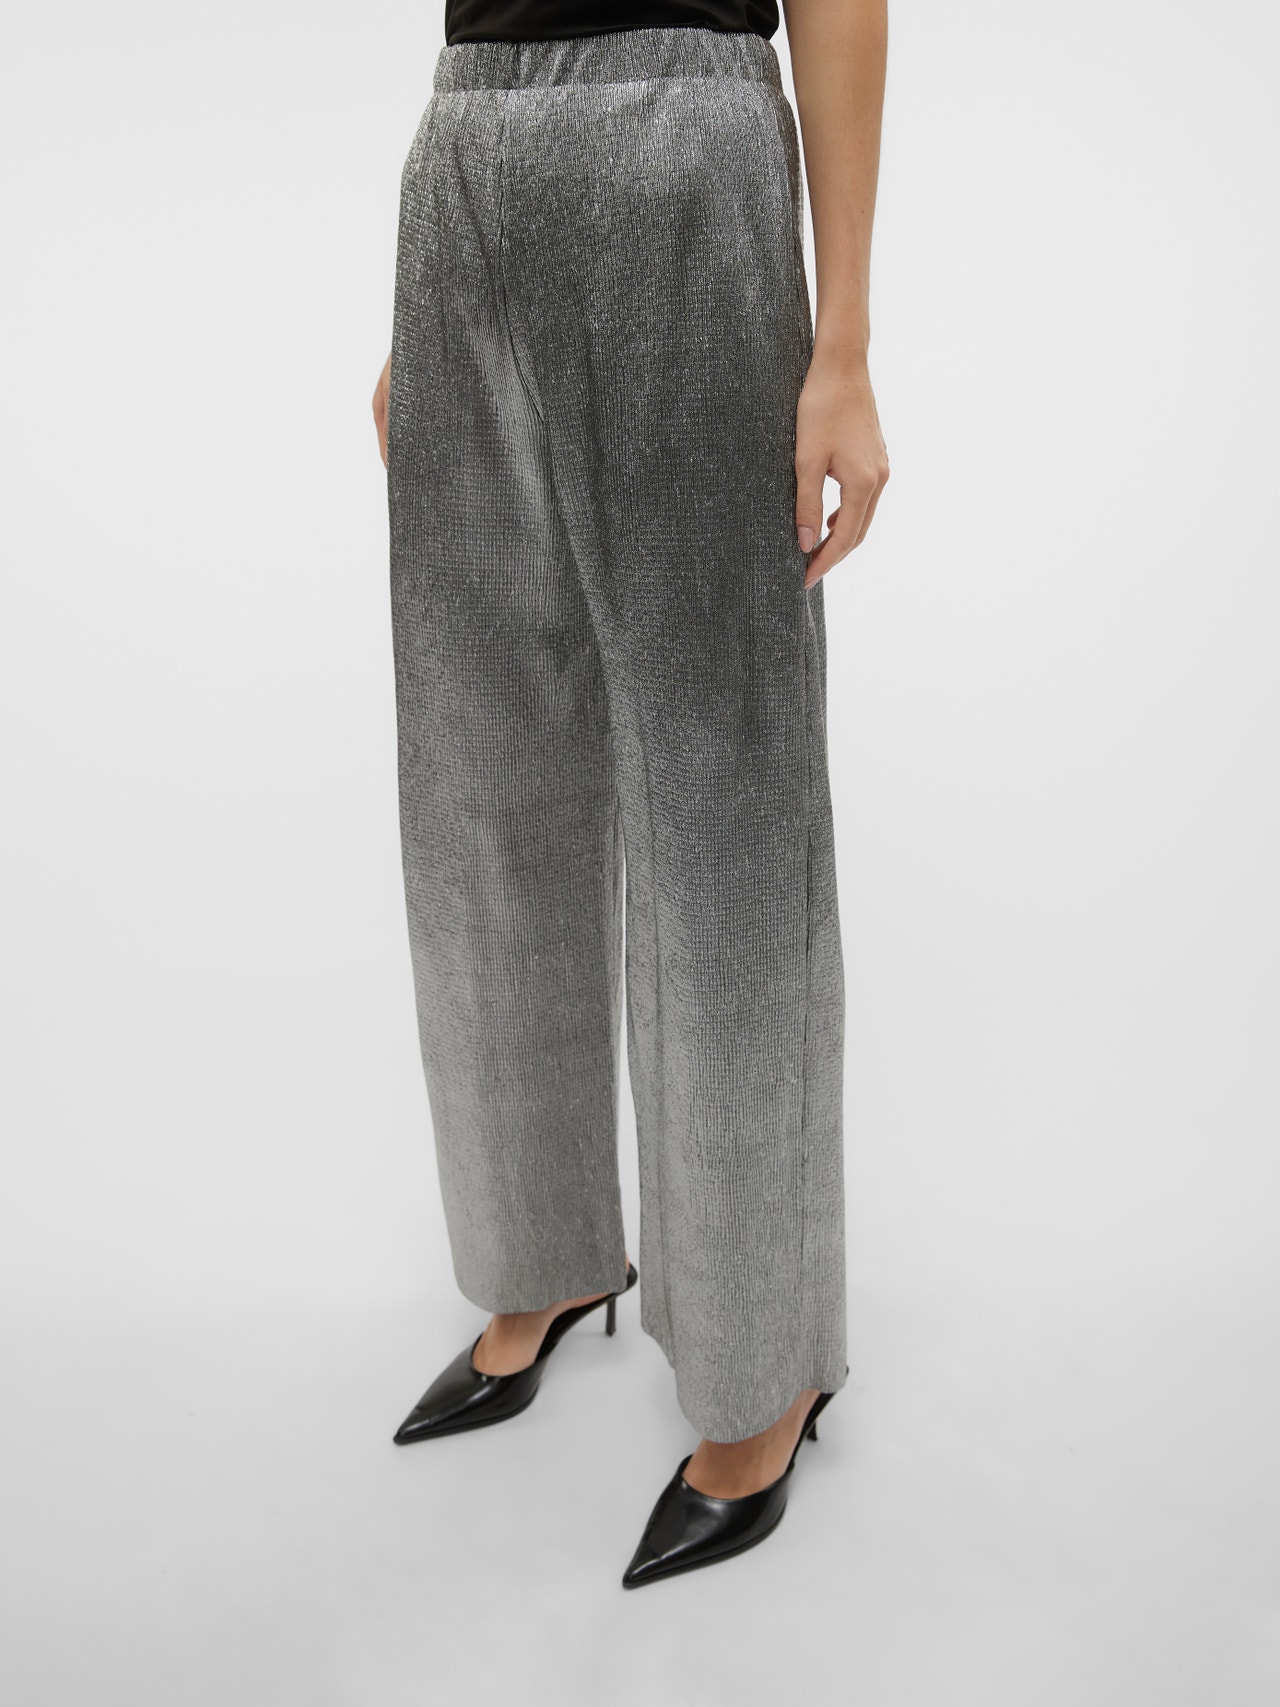 Vero Moda VMFELINE Pantalons -Silver - 10305250